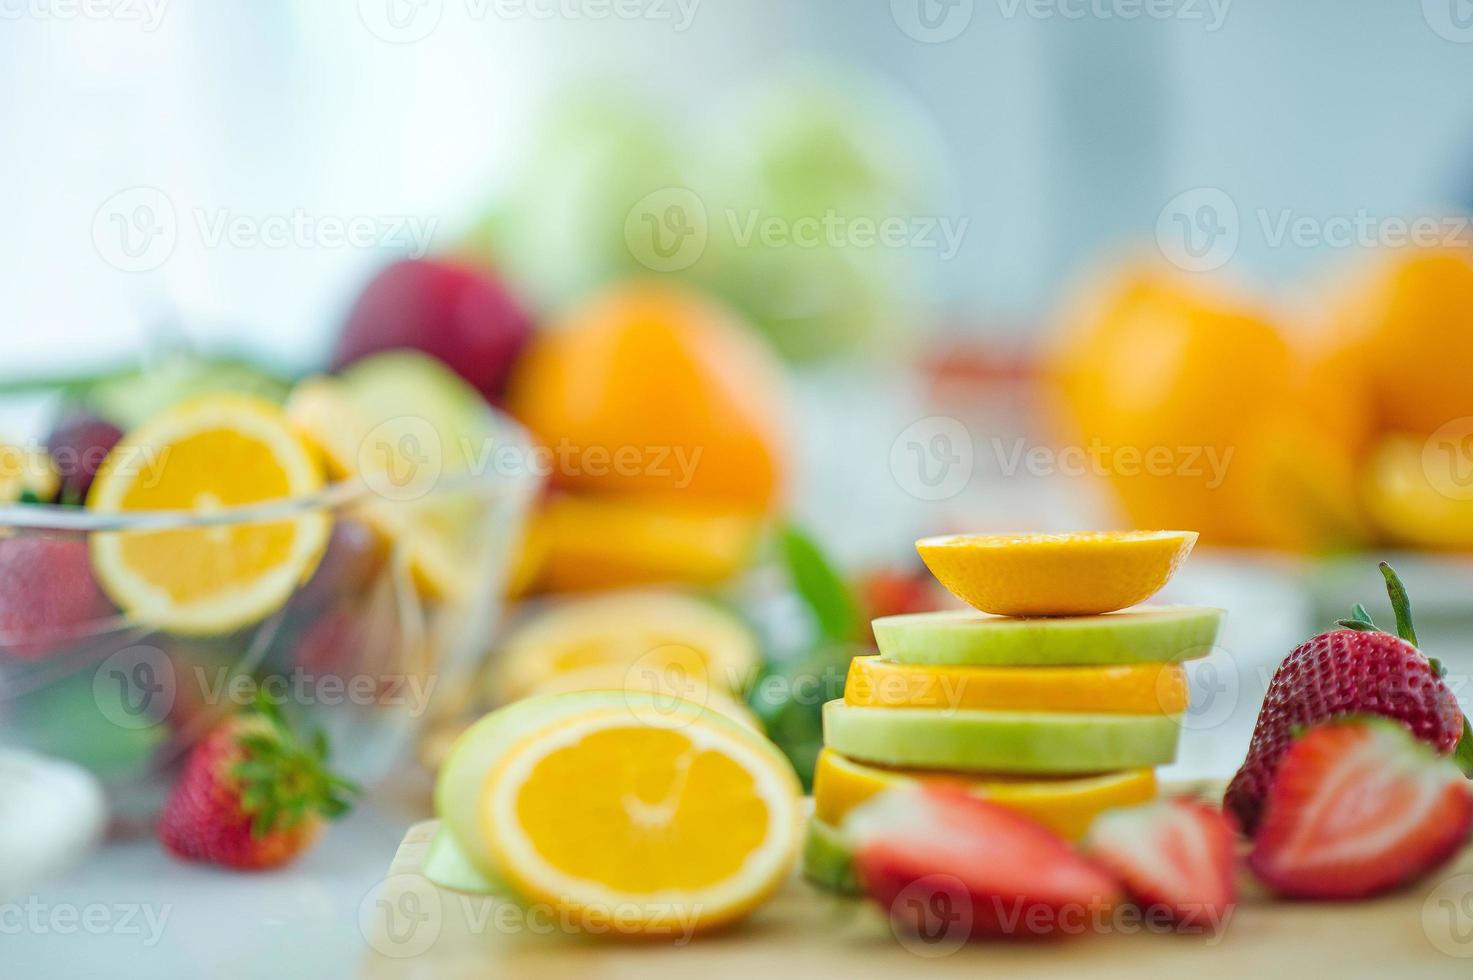 los frutos de la salud amante de la fruta sana y el cuidado de la salud para comer alimentos saludables. a la piel la fruta se coloca en una hermosa mesa, albaricoque de manzana, plátano, naranja, dragón, colocado foto